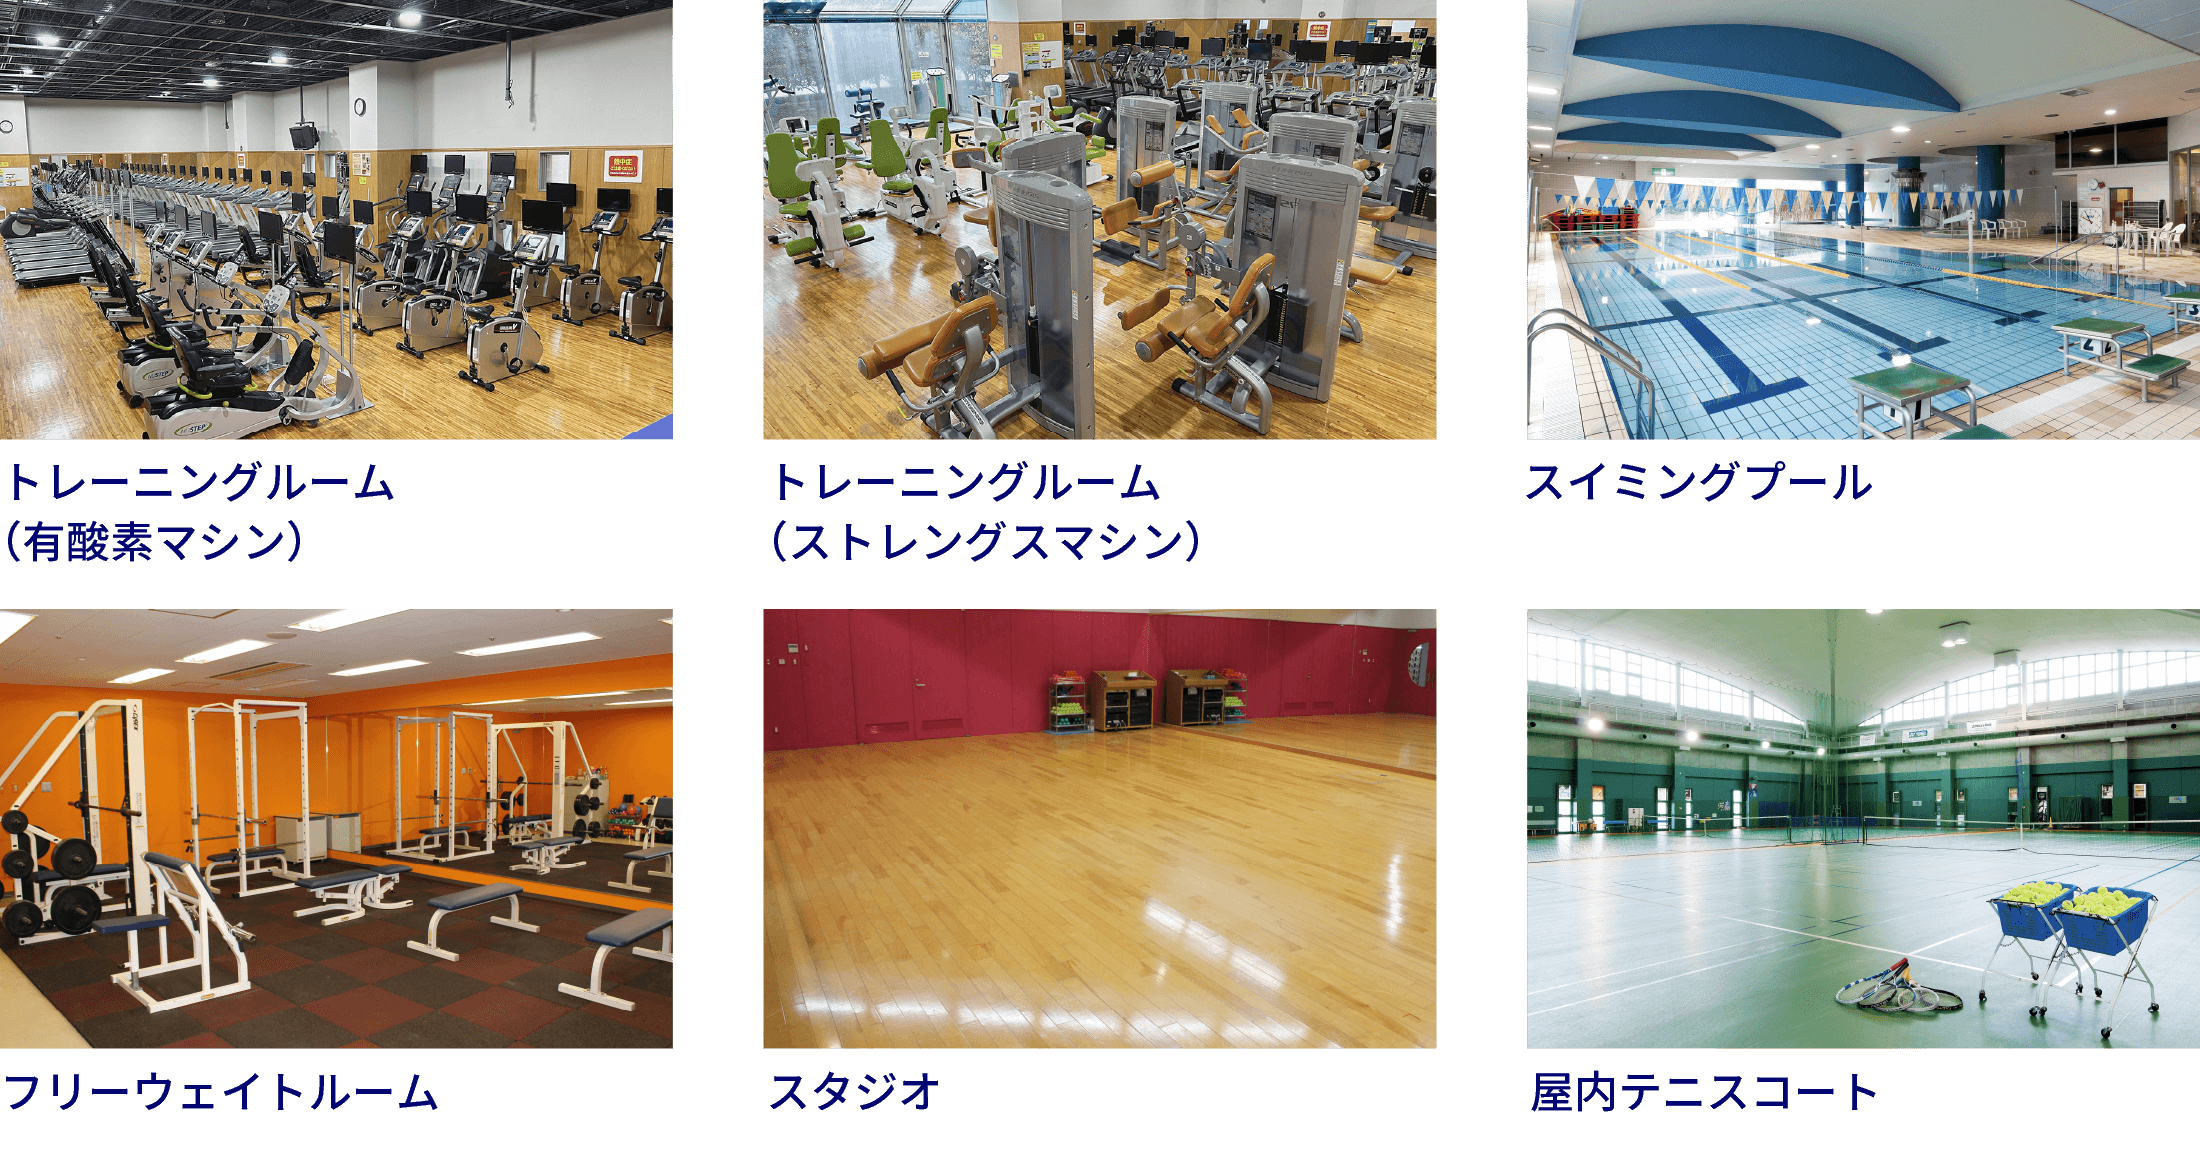 トレーニングルーム（有酸素マシン）、トレーニングルーム（ストレングスマシン）、スイミングプール、フリーウェイトルーム、スタジオ、屋内テニスコート